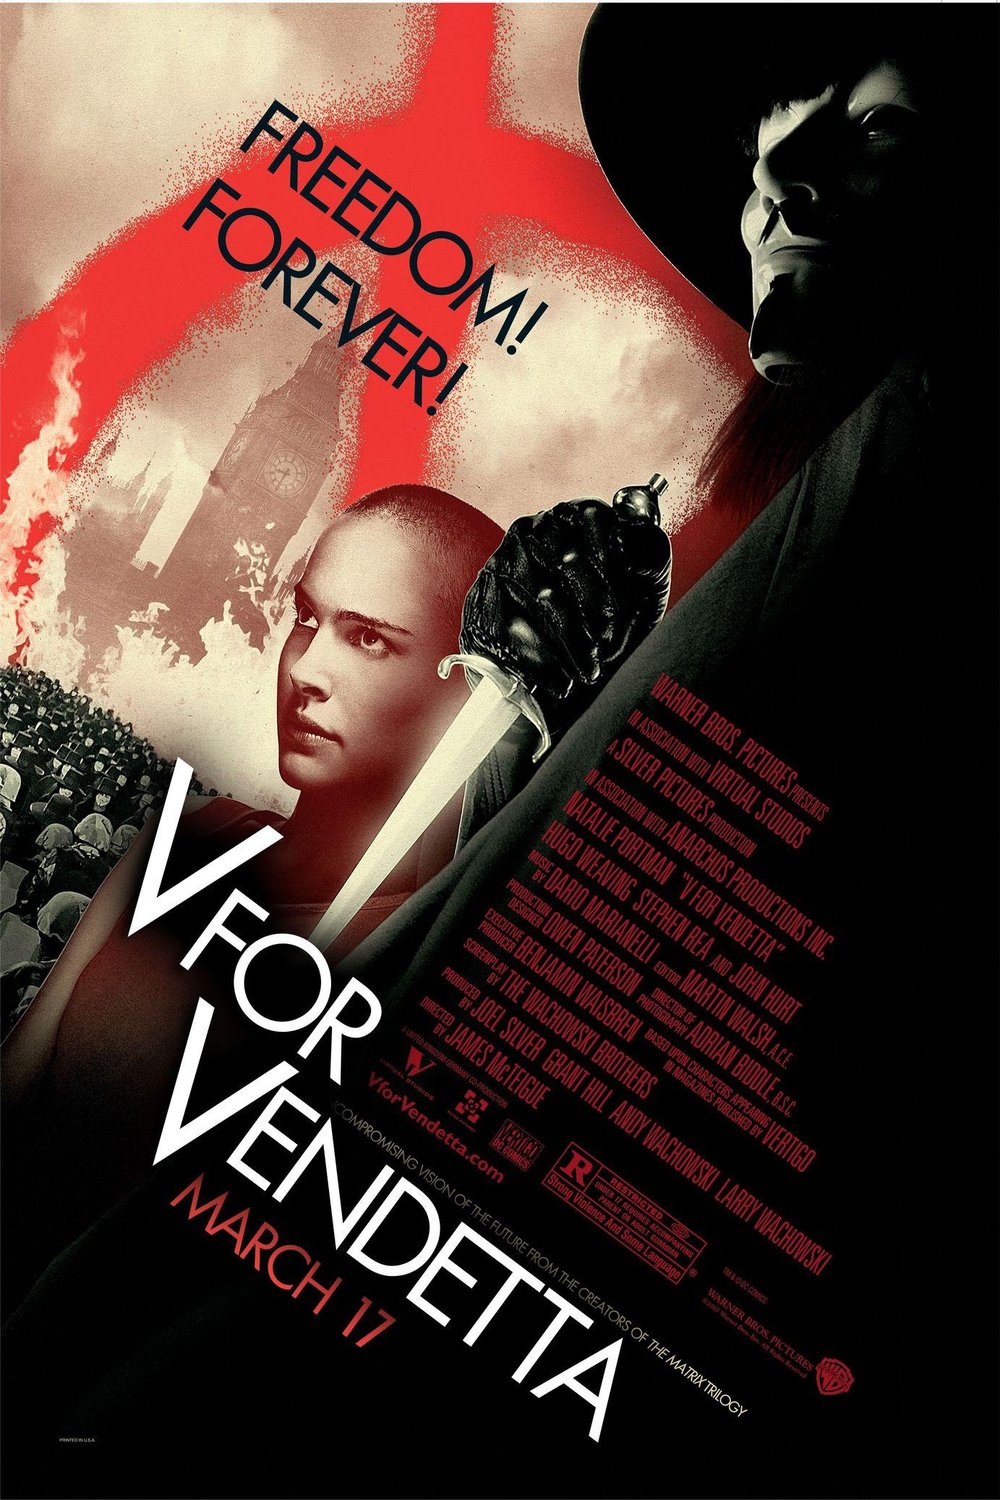 Poster of the movie V for Vendetta